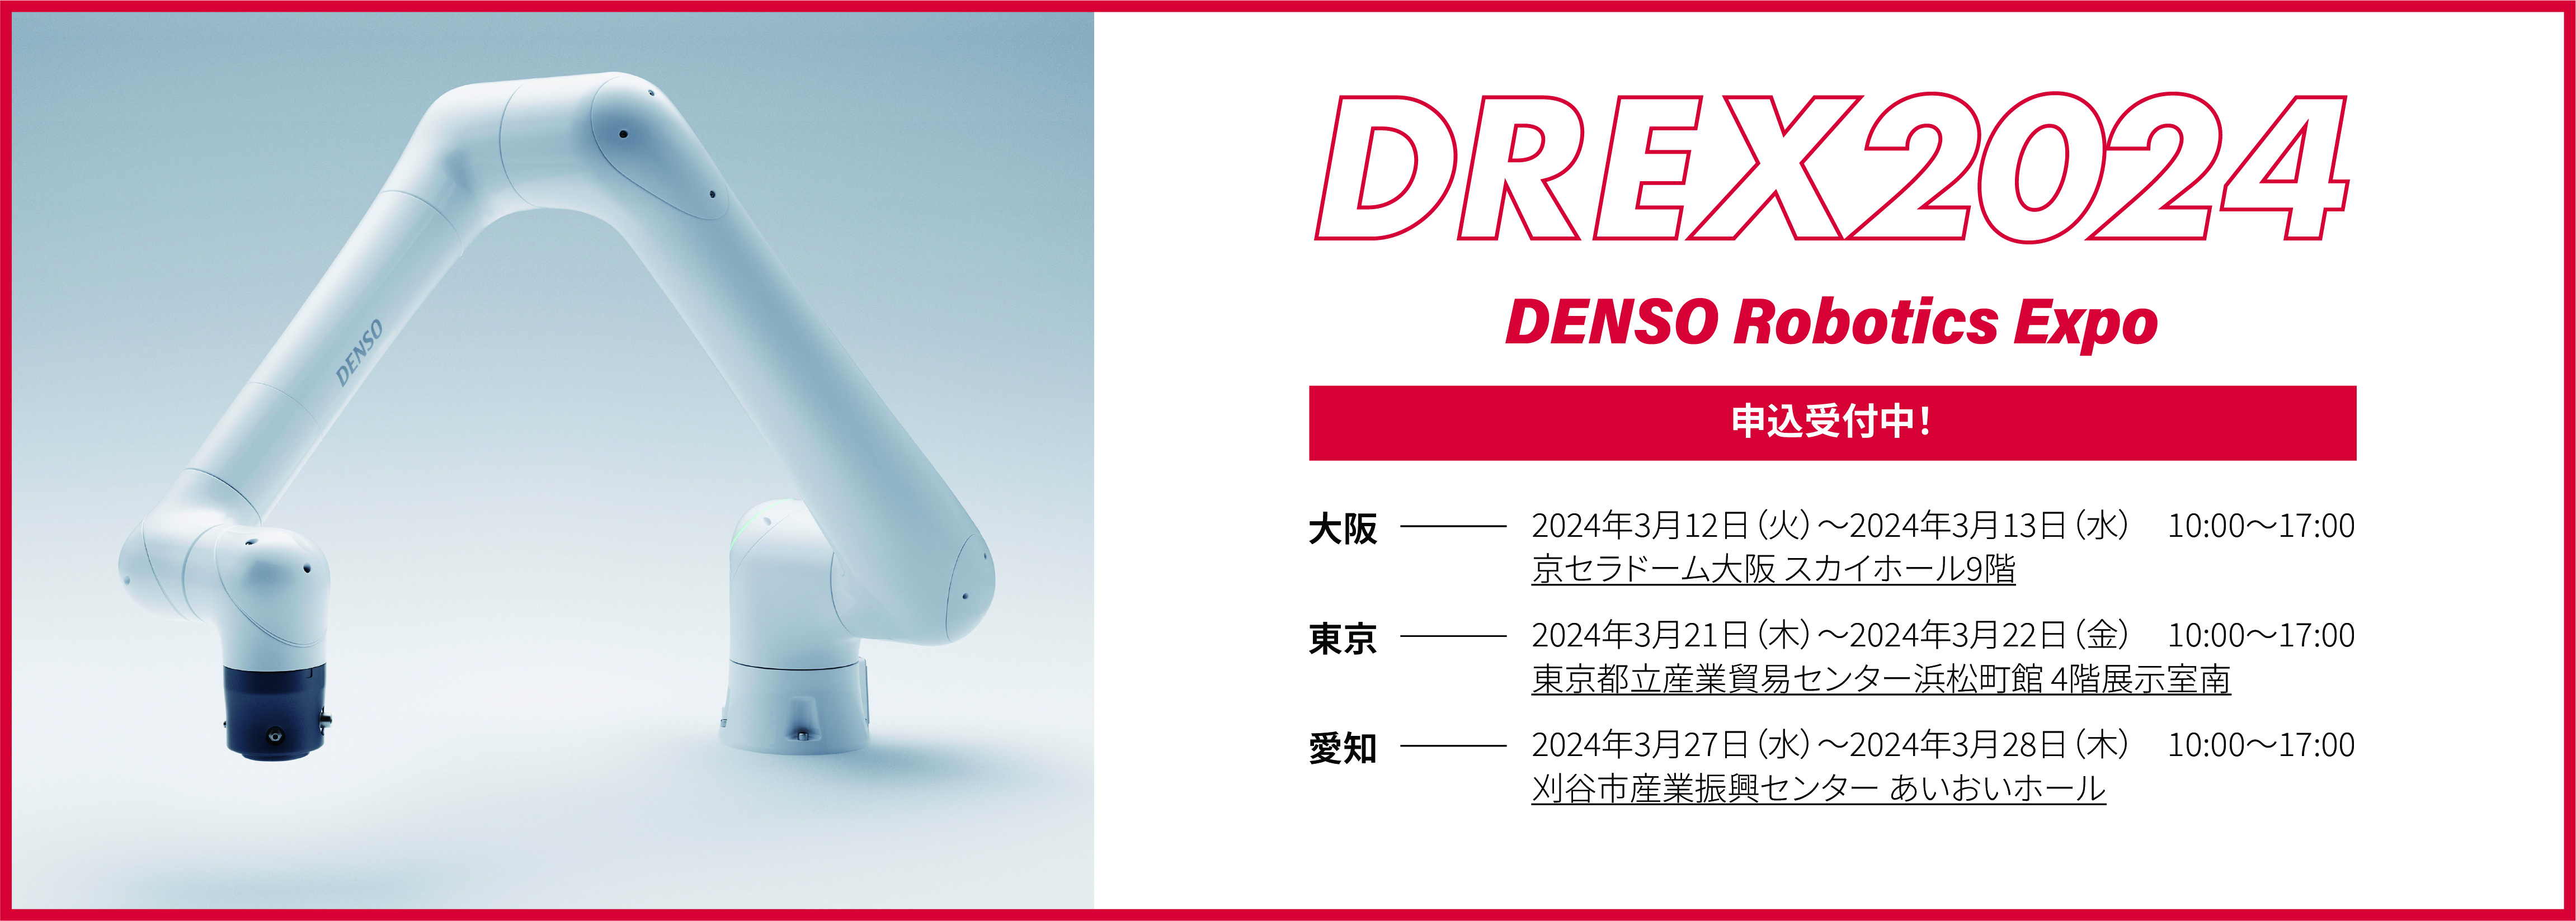 DENSO Robotics Expo 2024